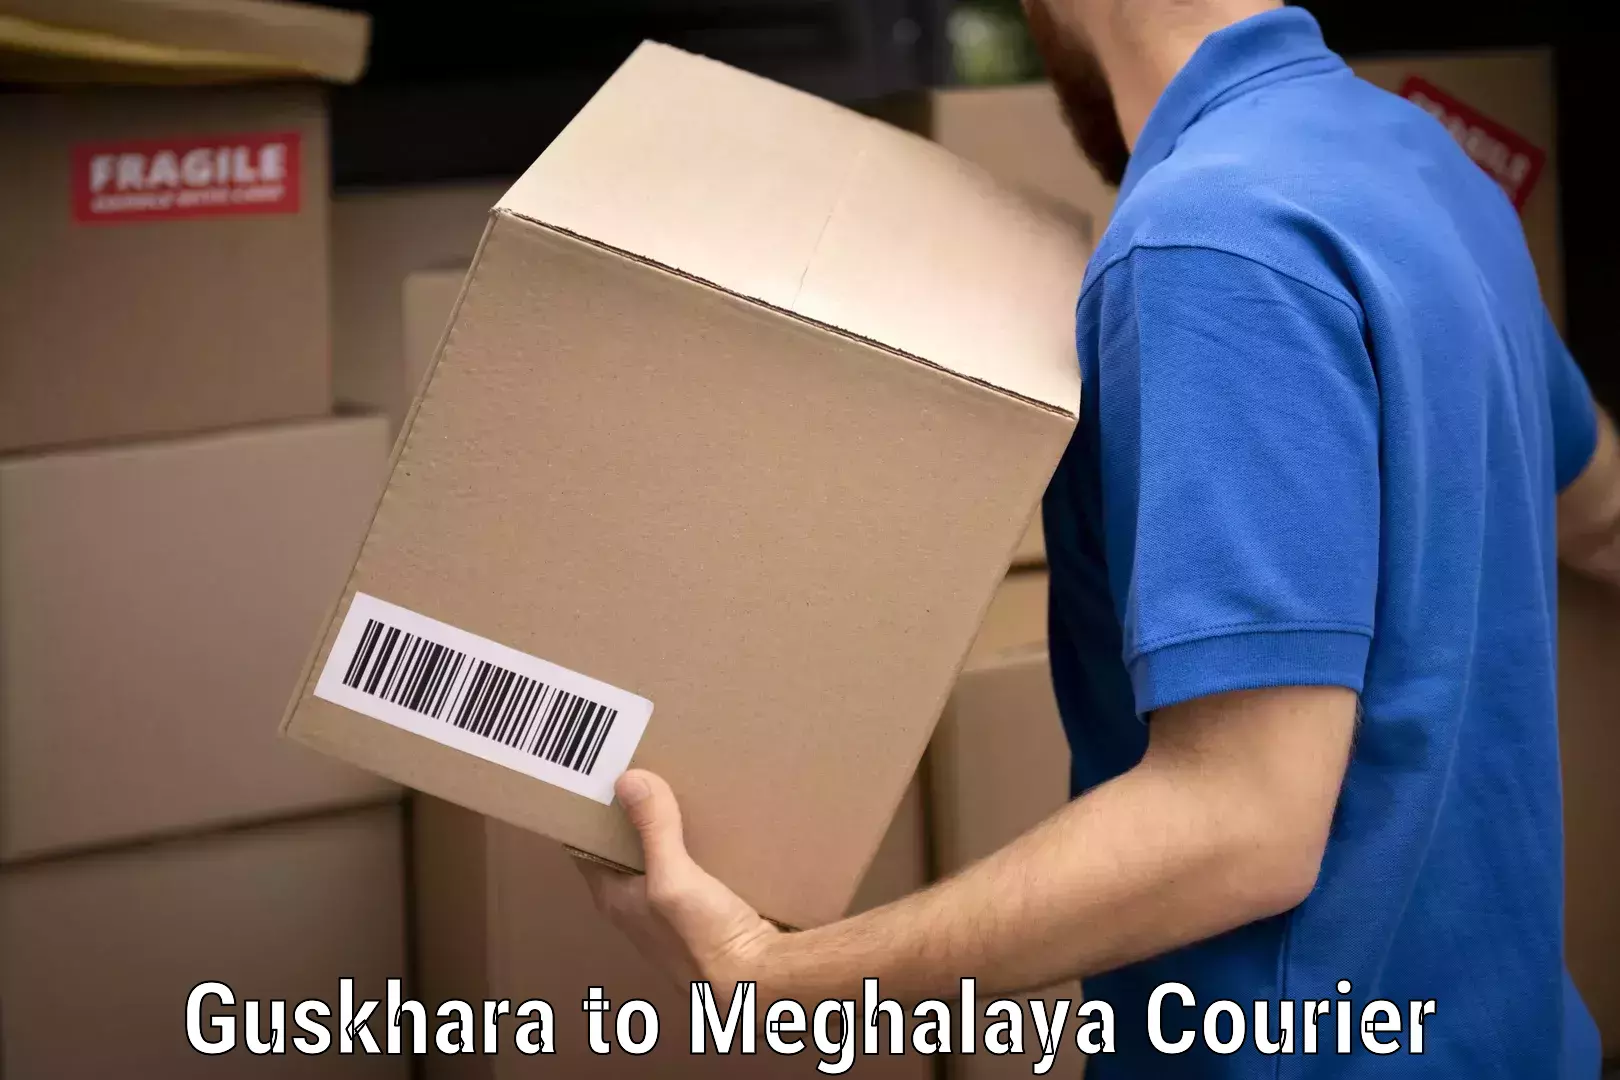 Efficient moving services Guskhara to Meghalaya